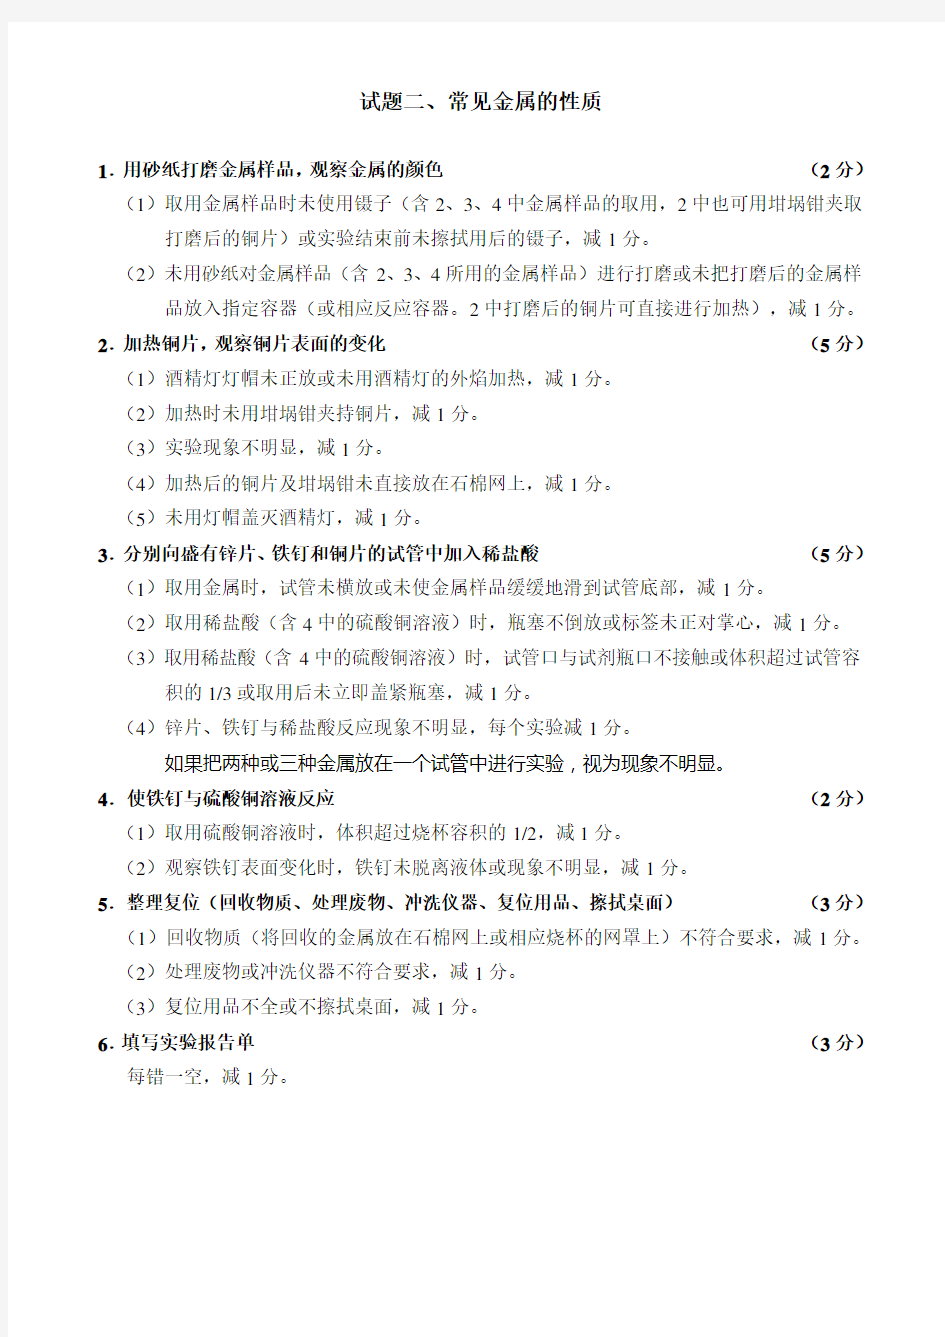 唐山市2019年初中毕业与升学化学实验操作考试评分细则